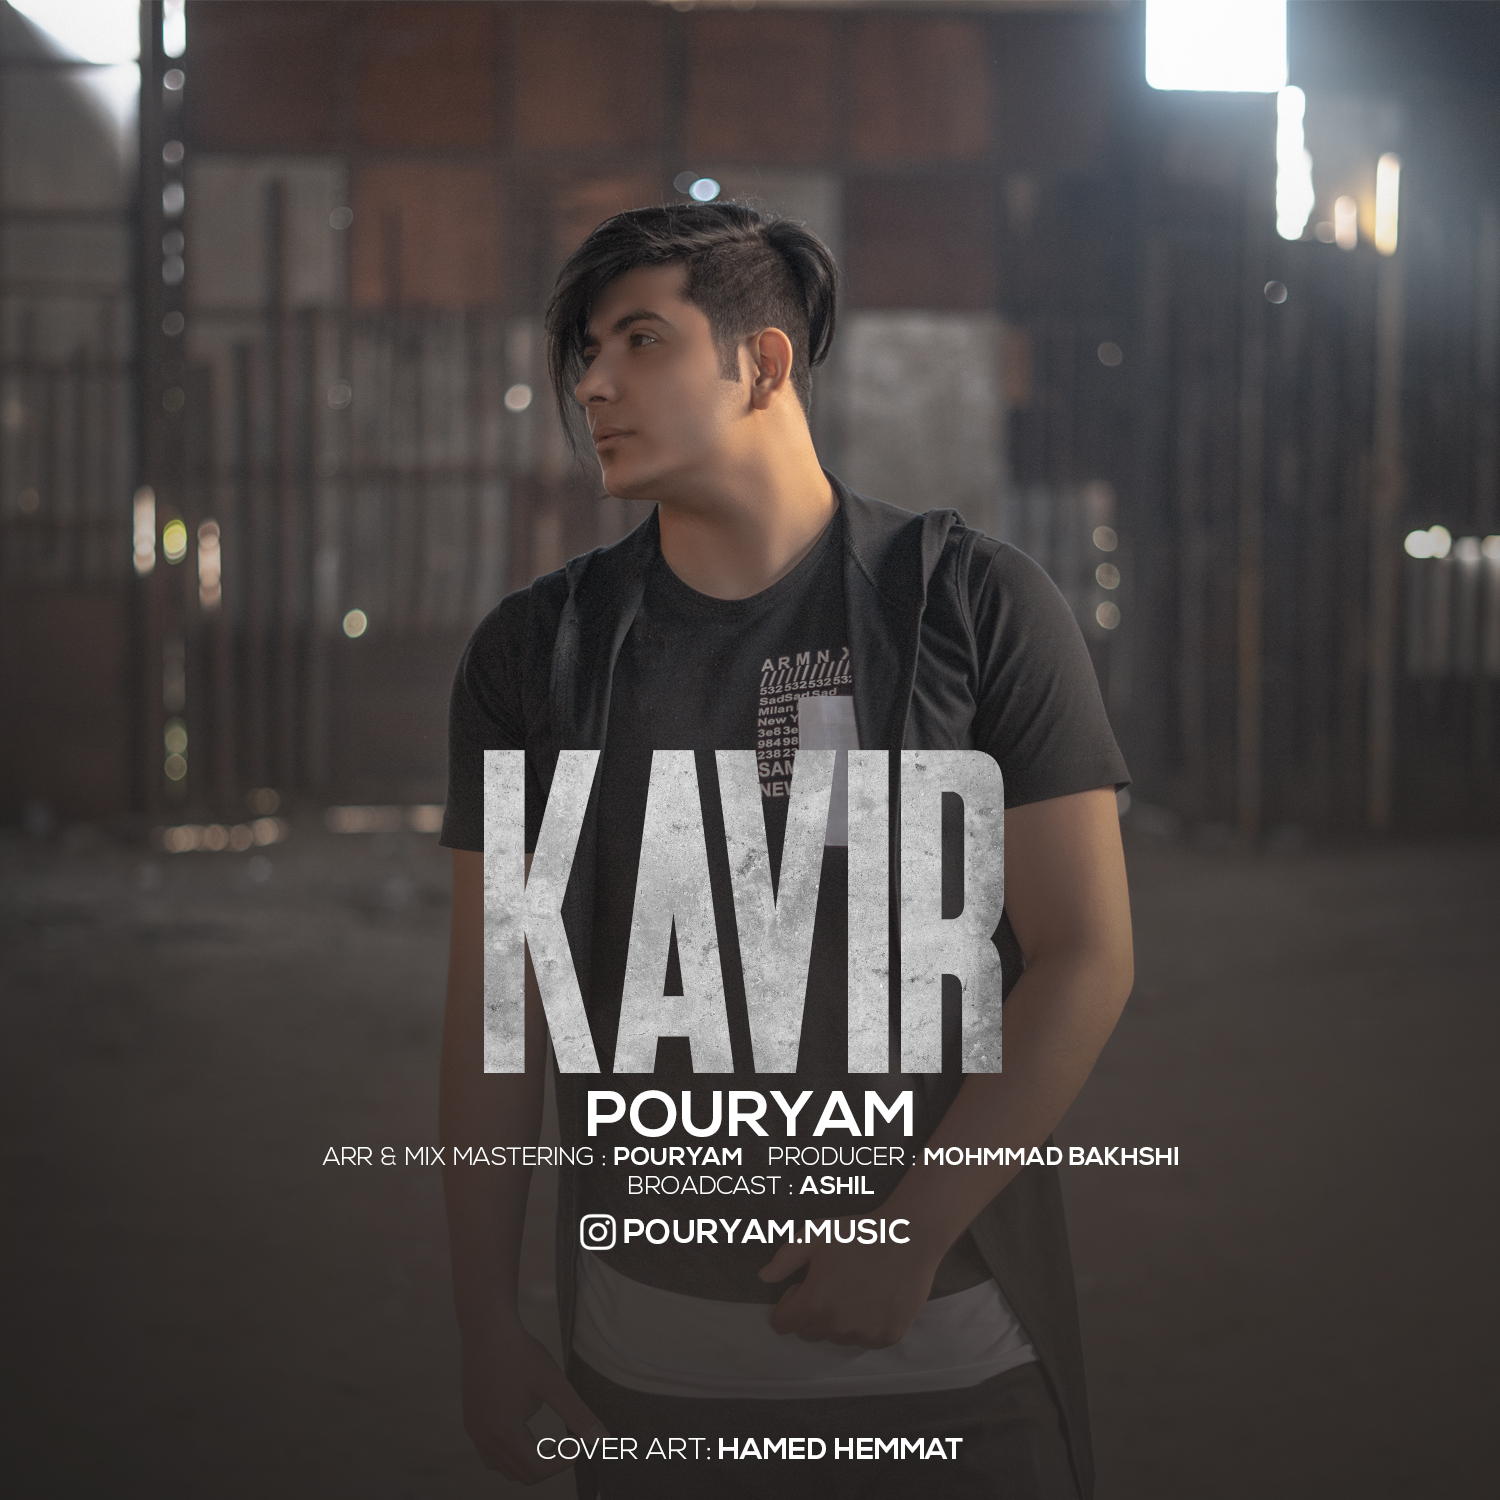 Pouryam – Kavir